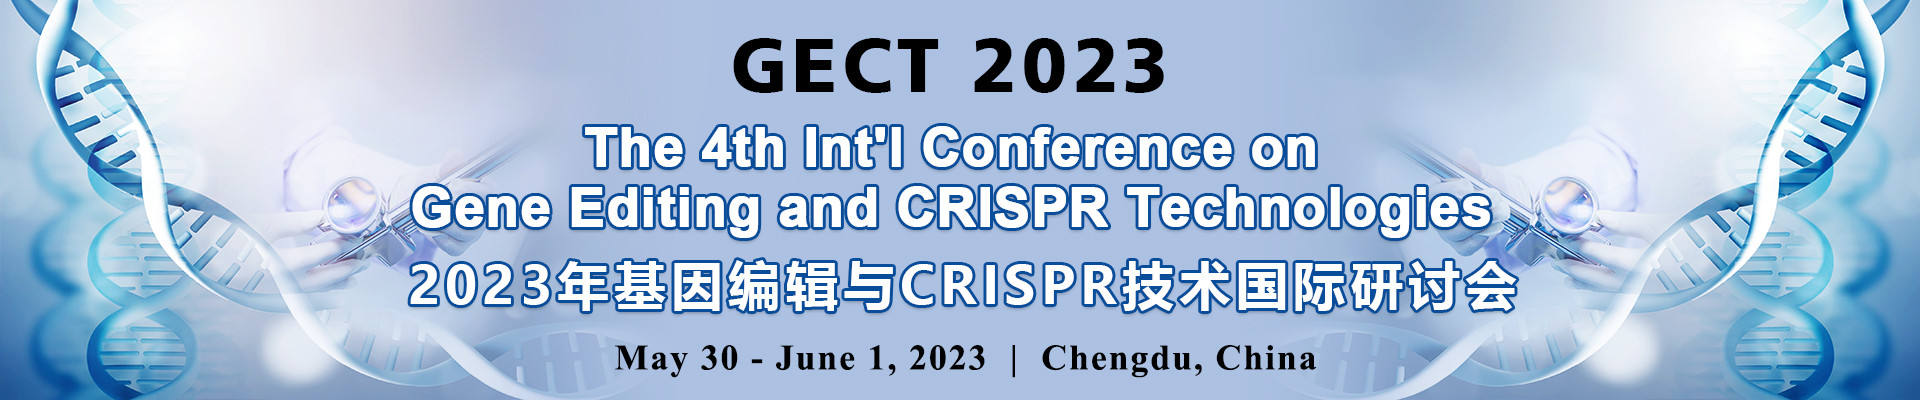 第四届基因编辑与CRISPR技术国际研讨会(GECT 2023)